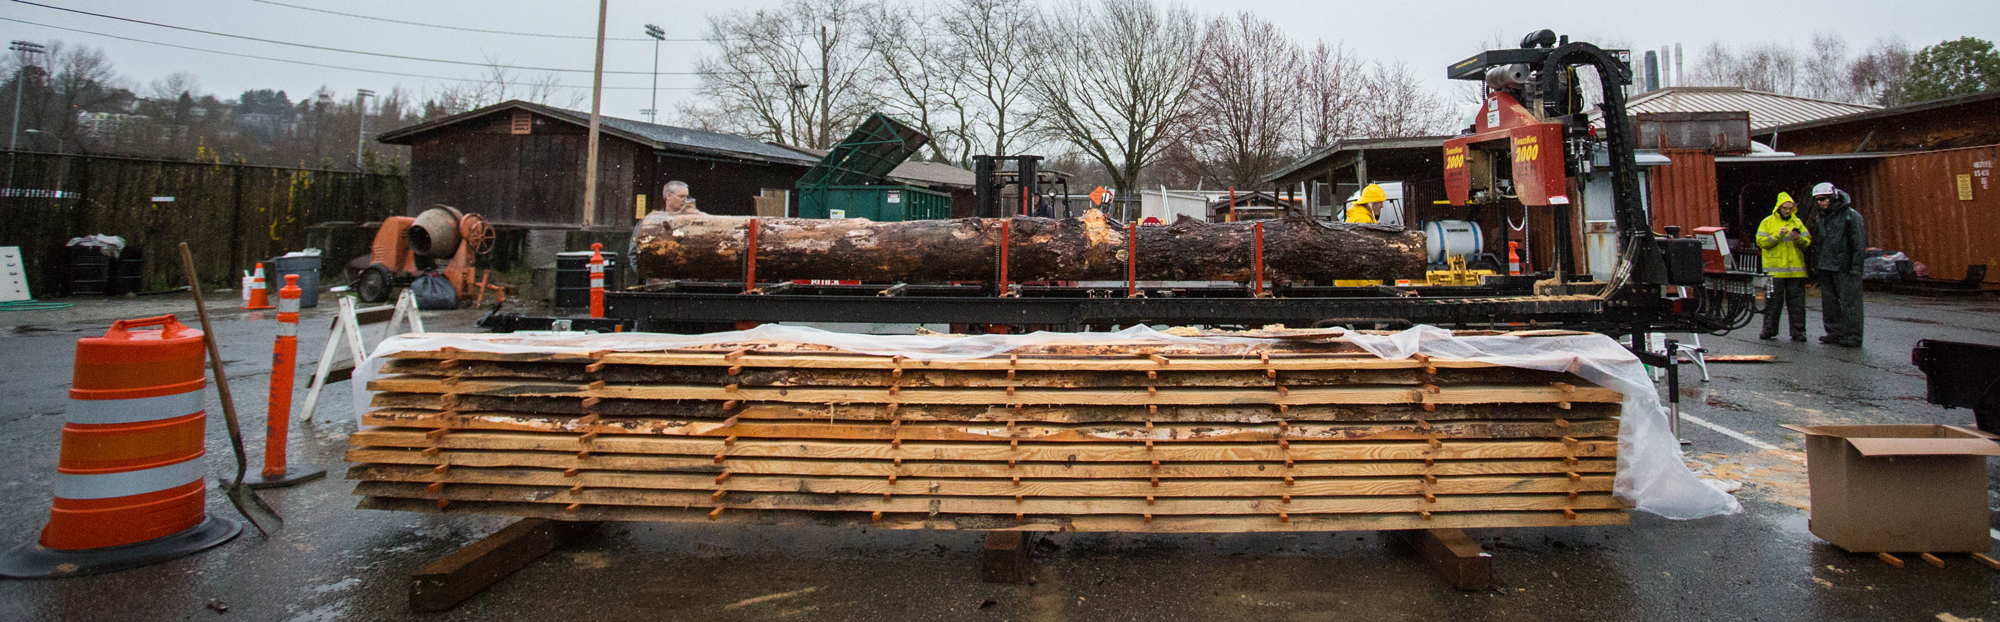 Ponderosa Pine slabs in lumbermill